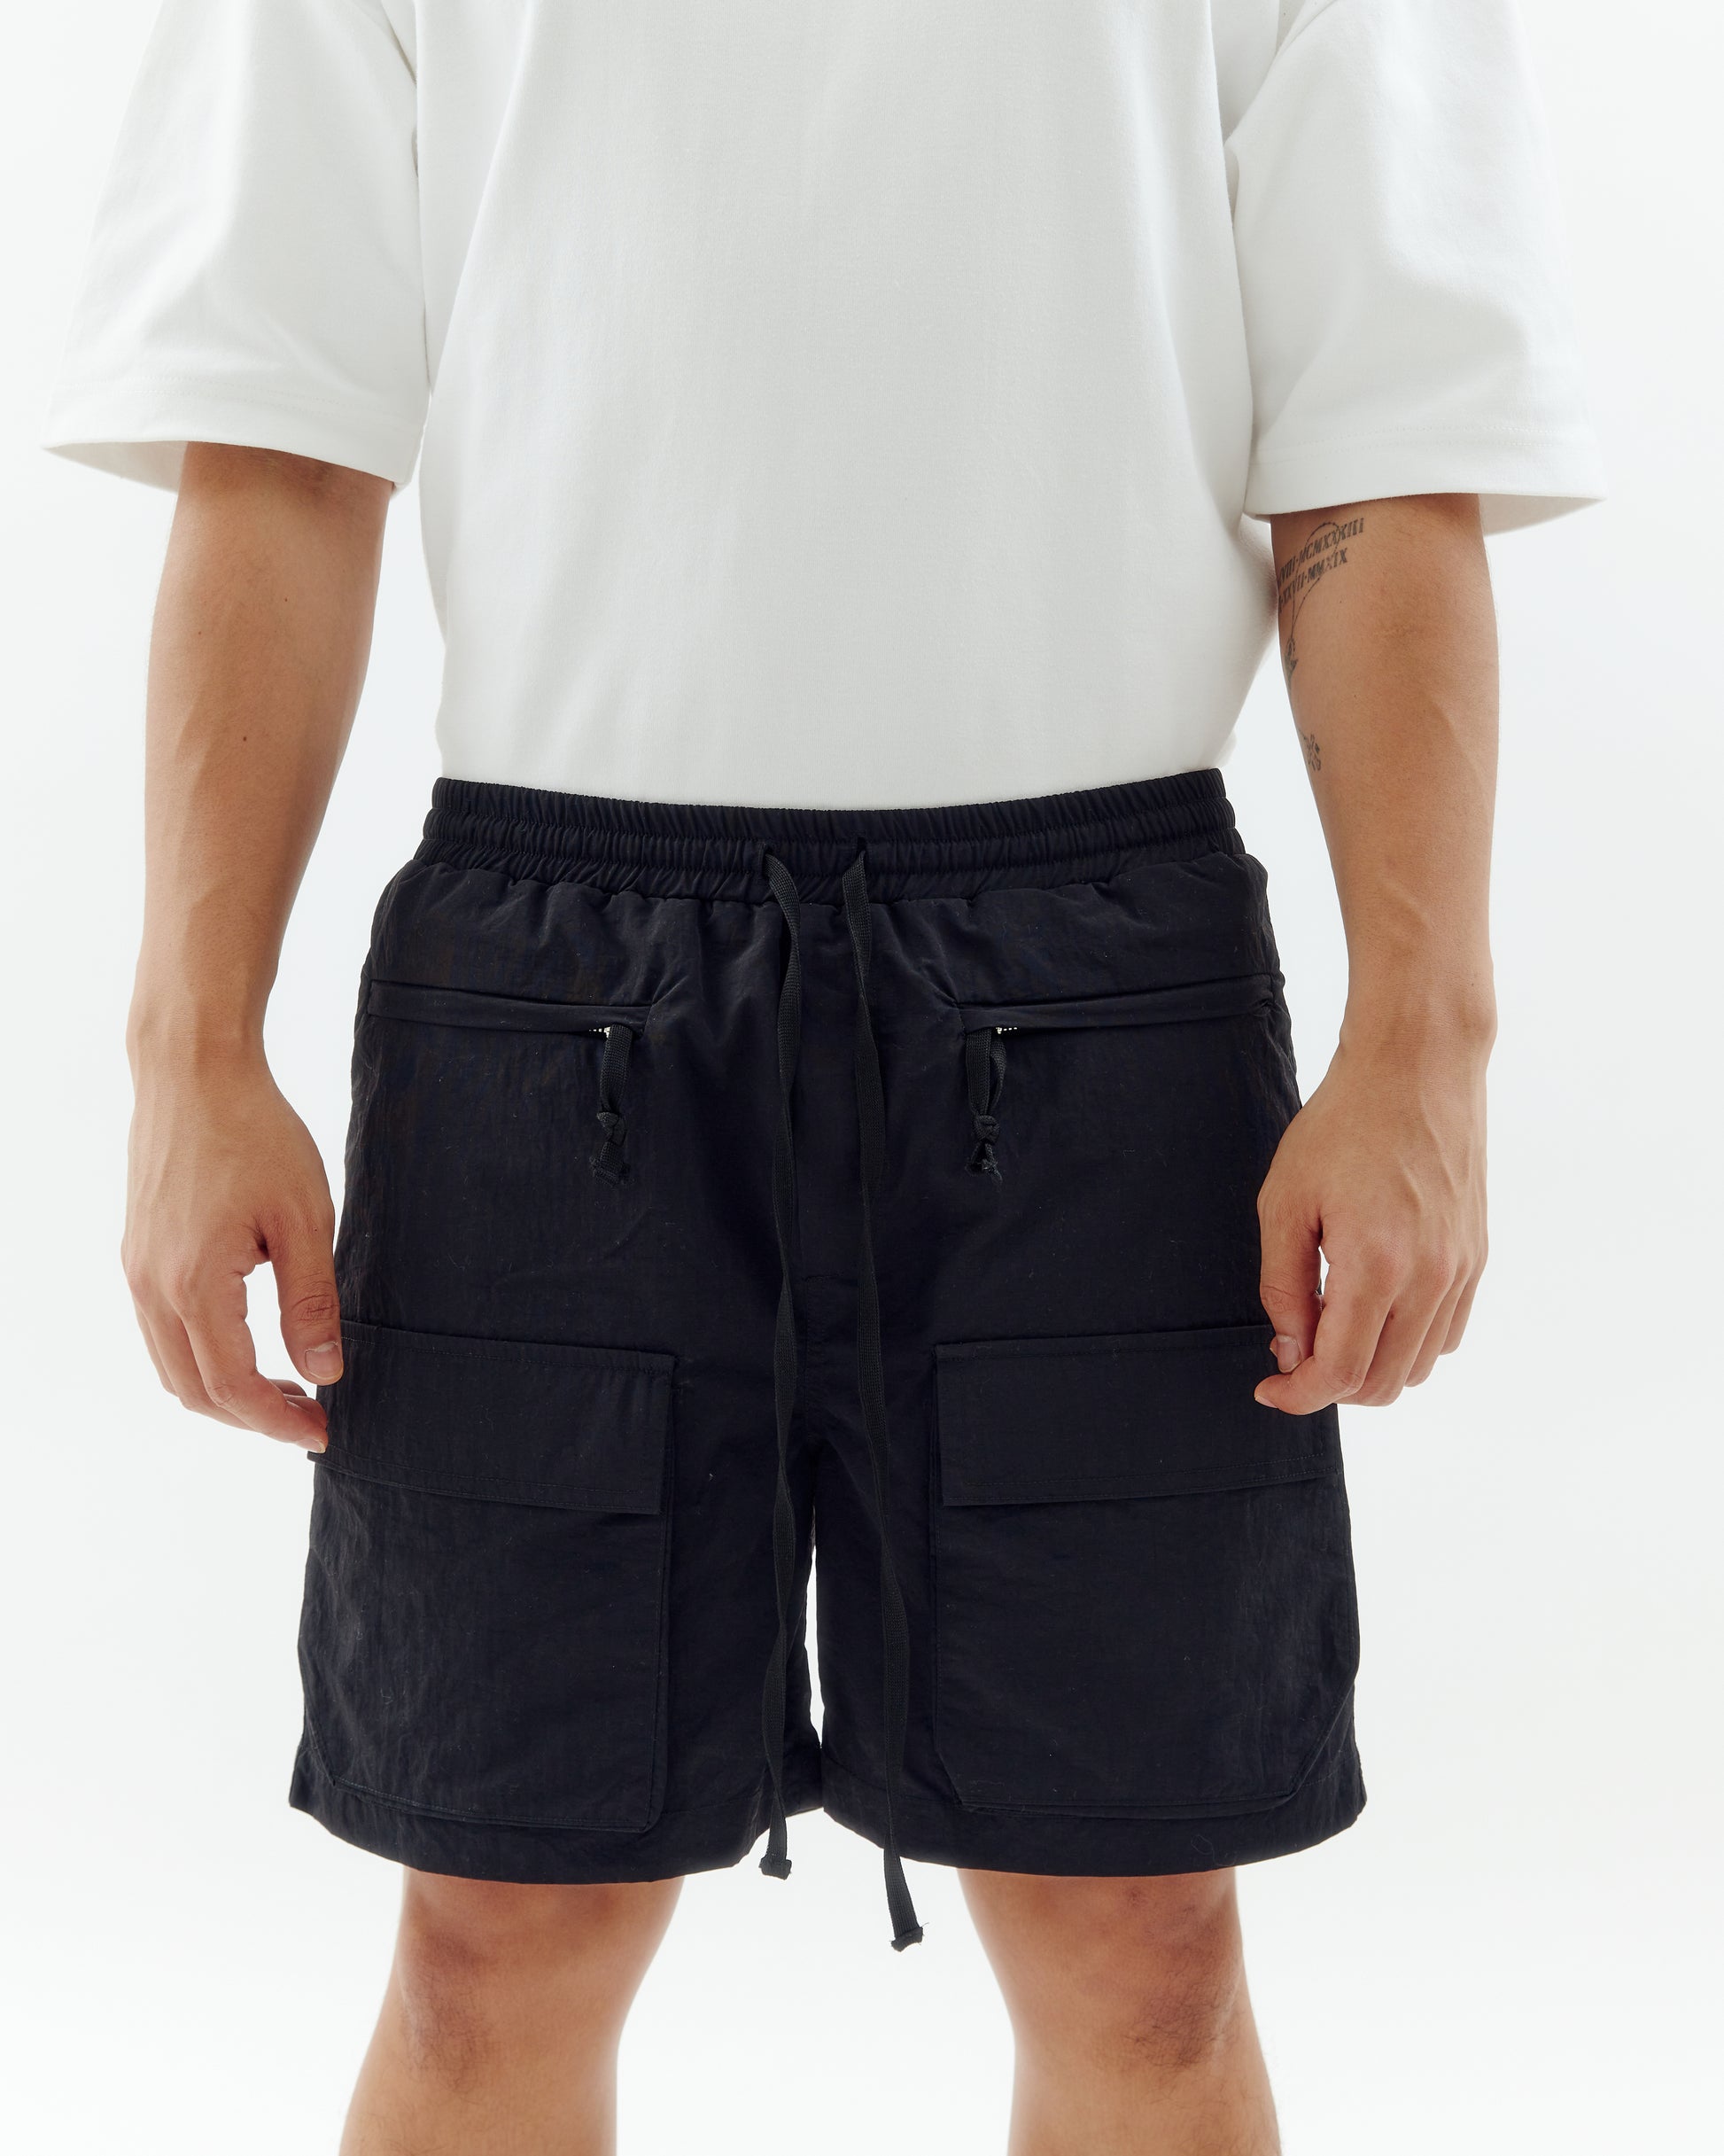 Cargo Bermuda shorts with modal